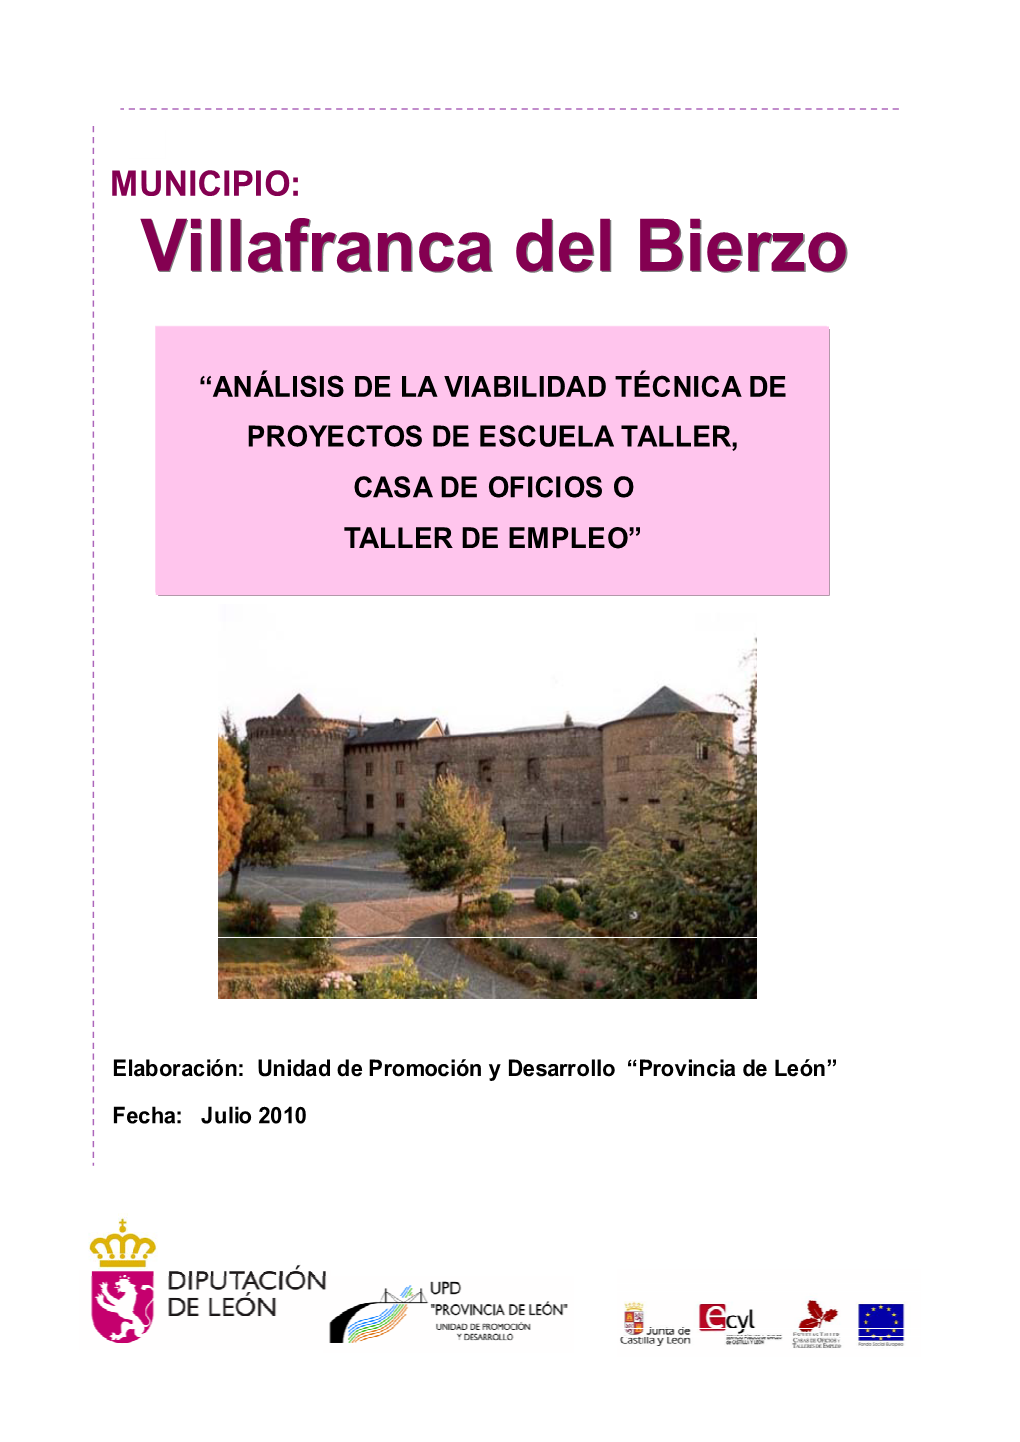 MUNICIPIO: Villafrancavillafranca Deldel Bierzobierzo